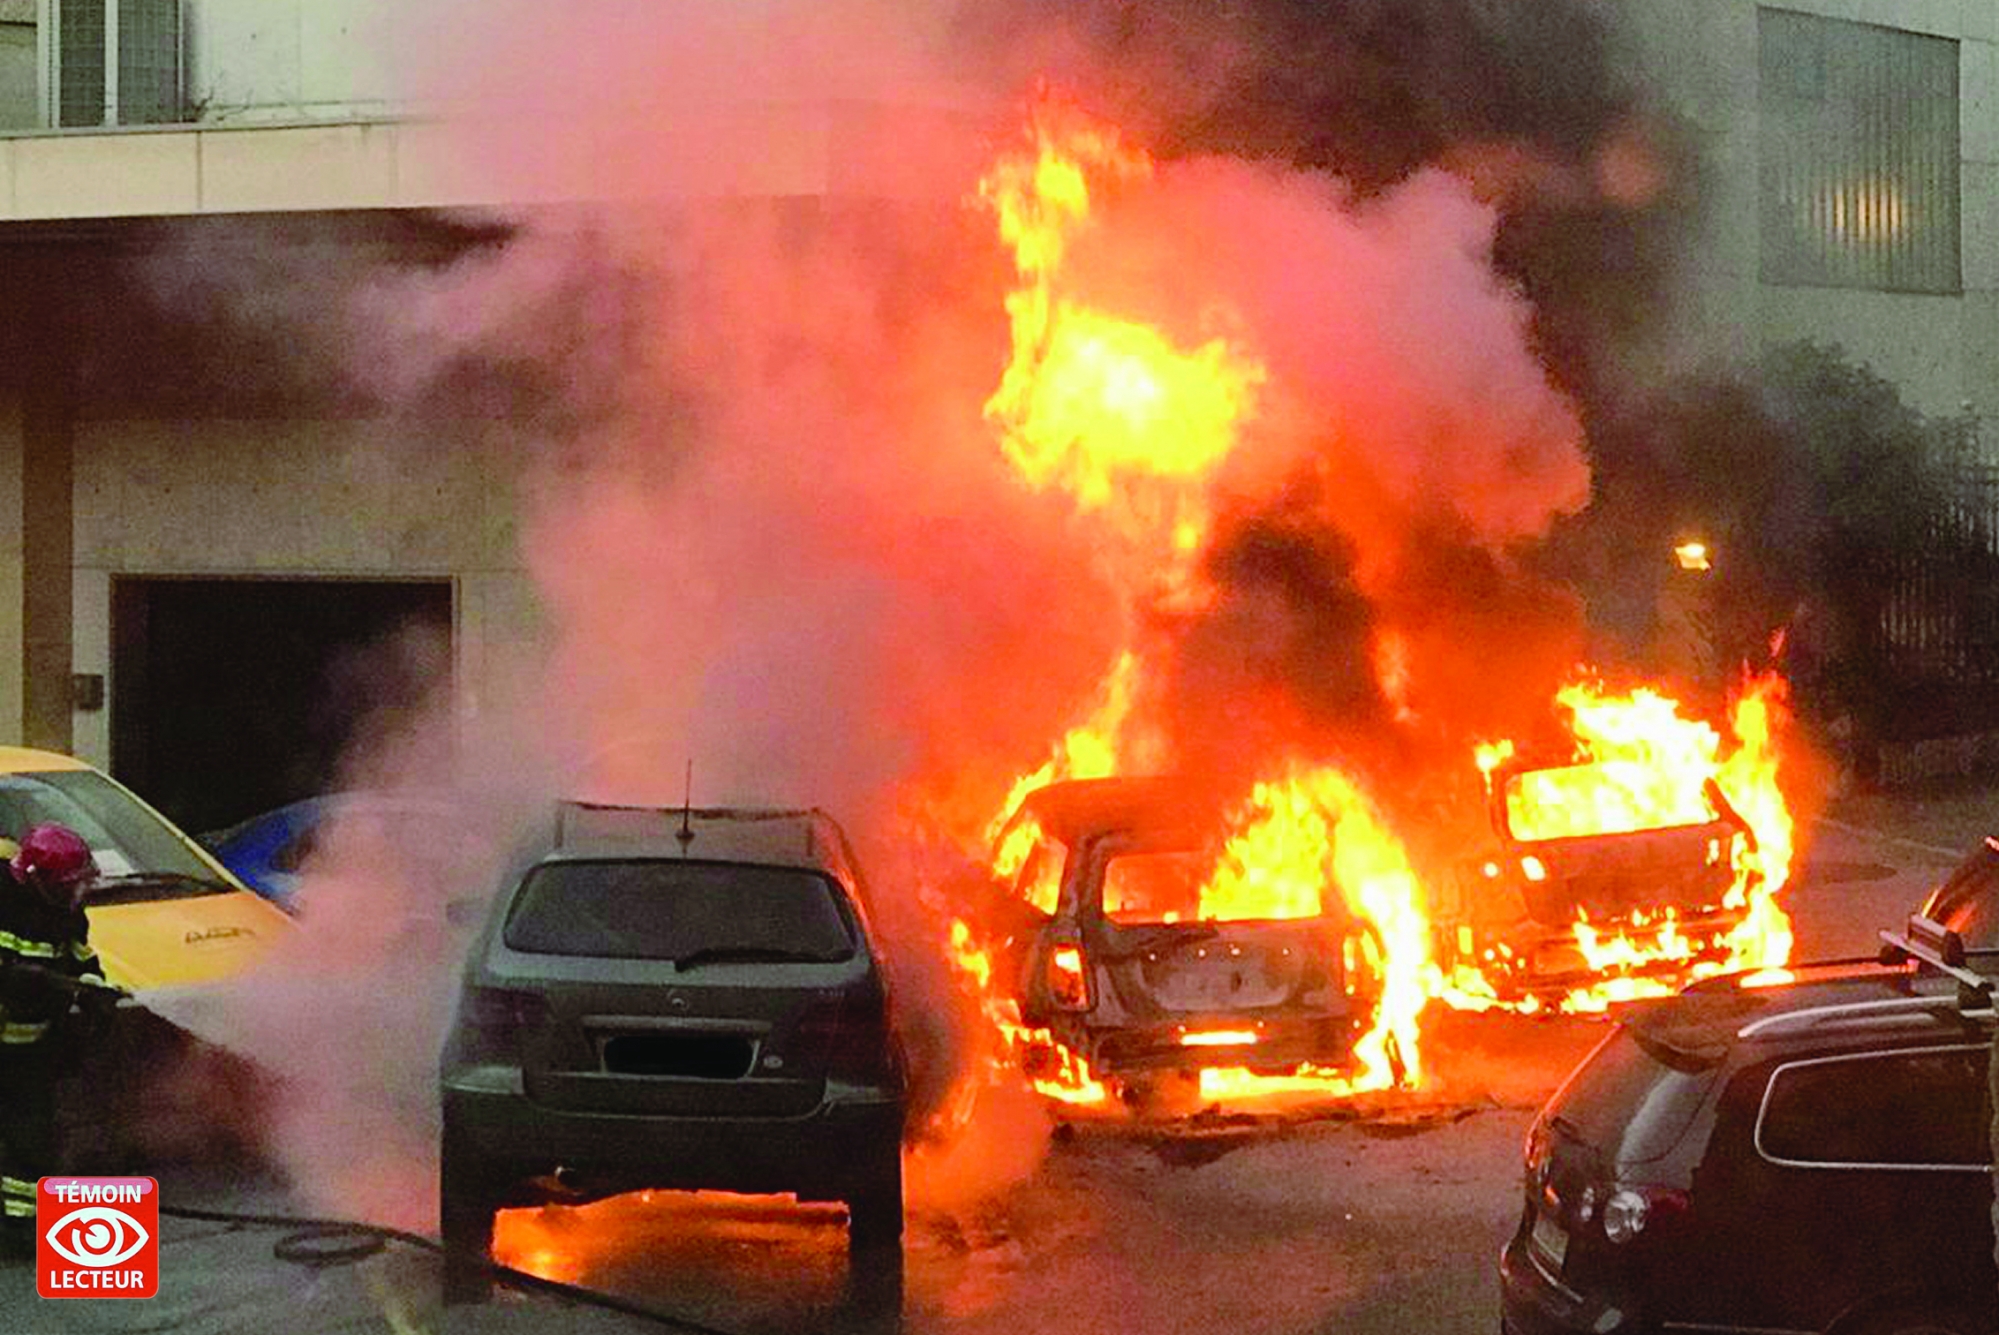 Incendie criminel dans le parking du Ministère public à Sion.



Témoin Lecteur